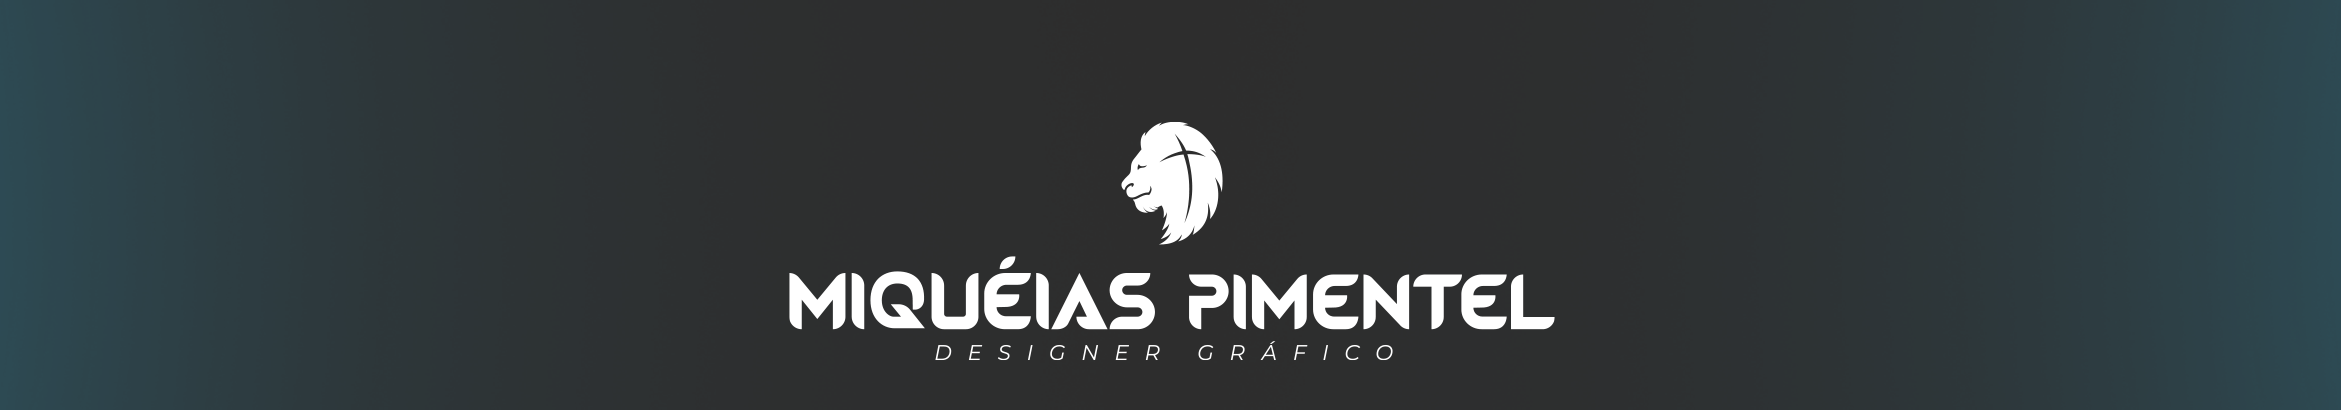 Miquéias Pimentel's profile banner